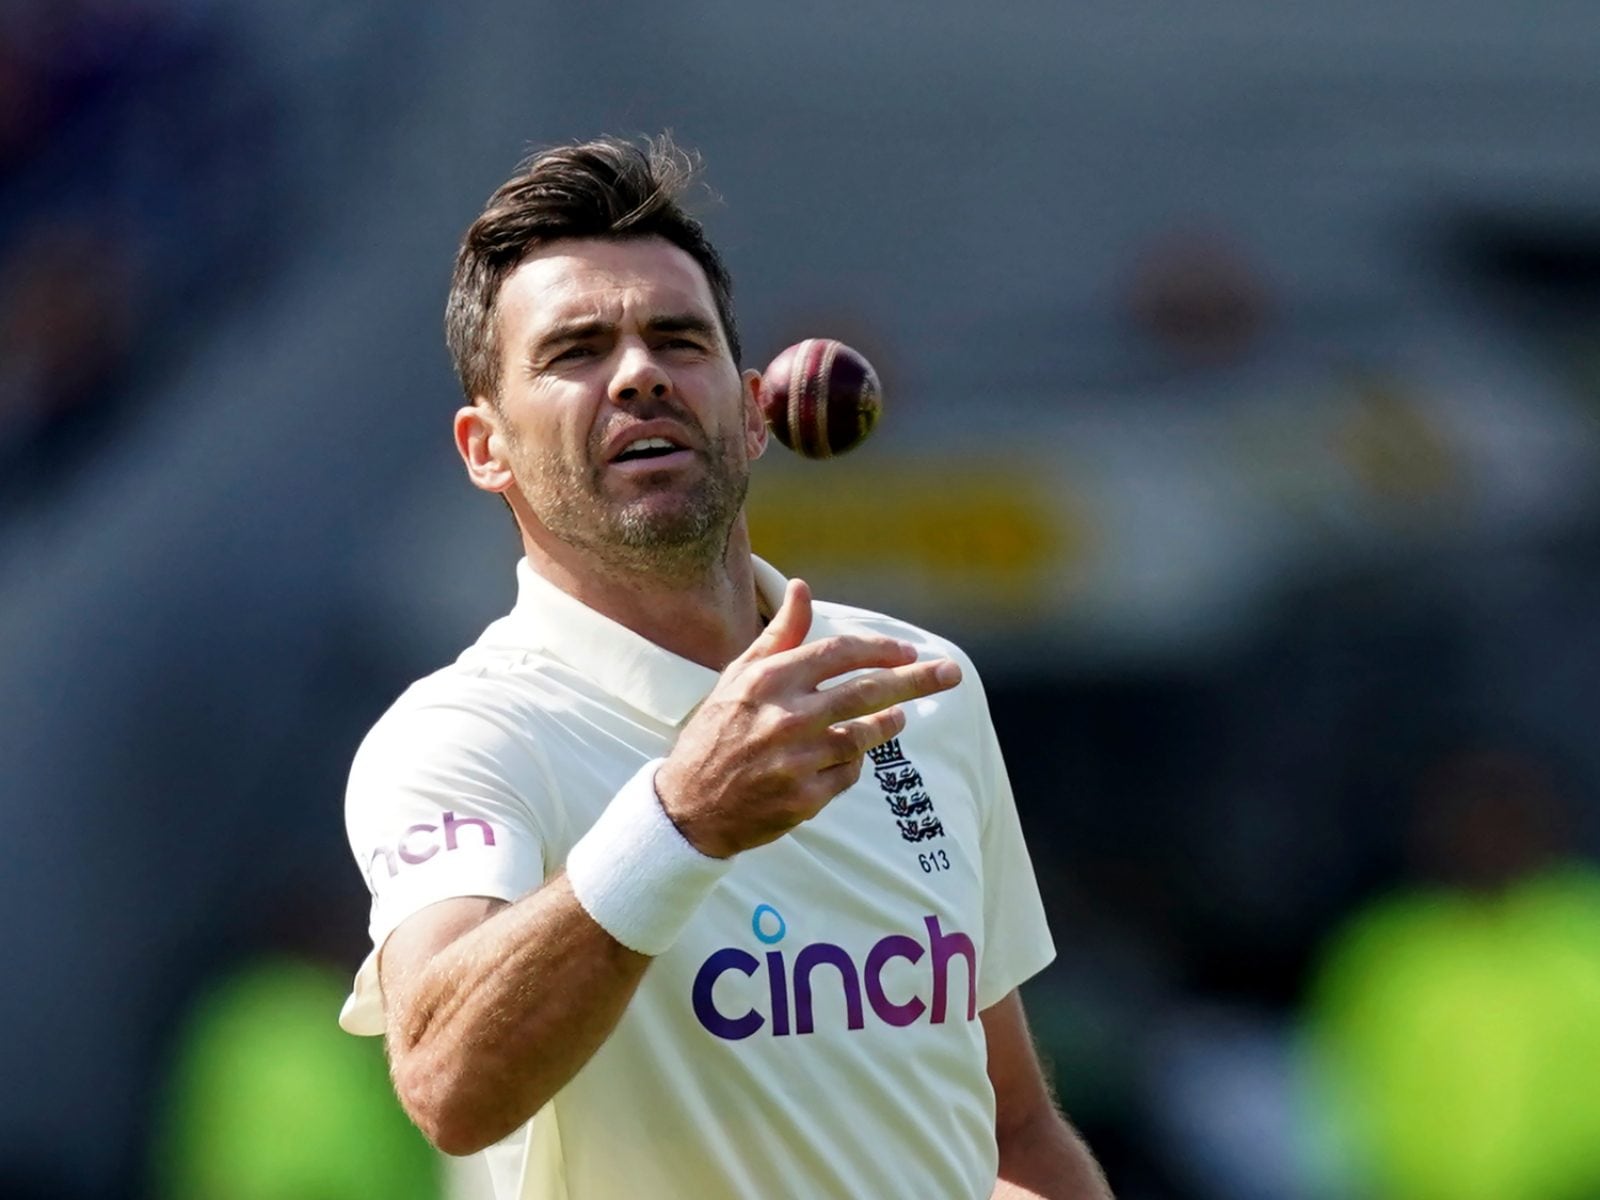 इंग्लैंड के दिग्गज तेज गेंदबाज जेम्स एंडरसन की टेस्ट क्रिकेट में एक और खास उपलब्धि, इस मामले में रिचर्ड हेडली के बराबर 2